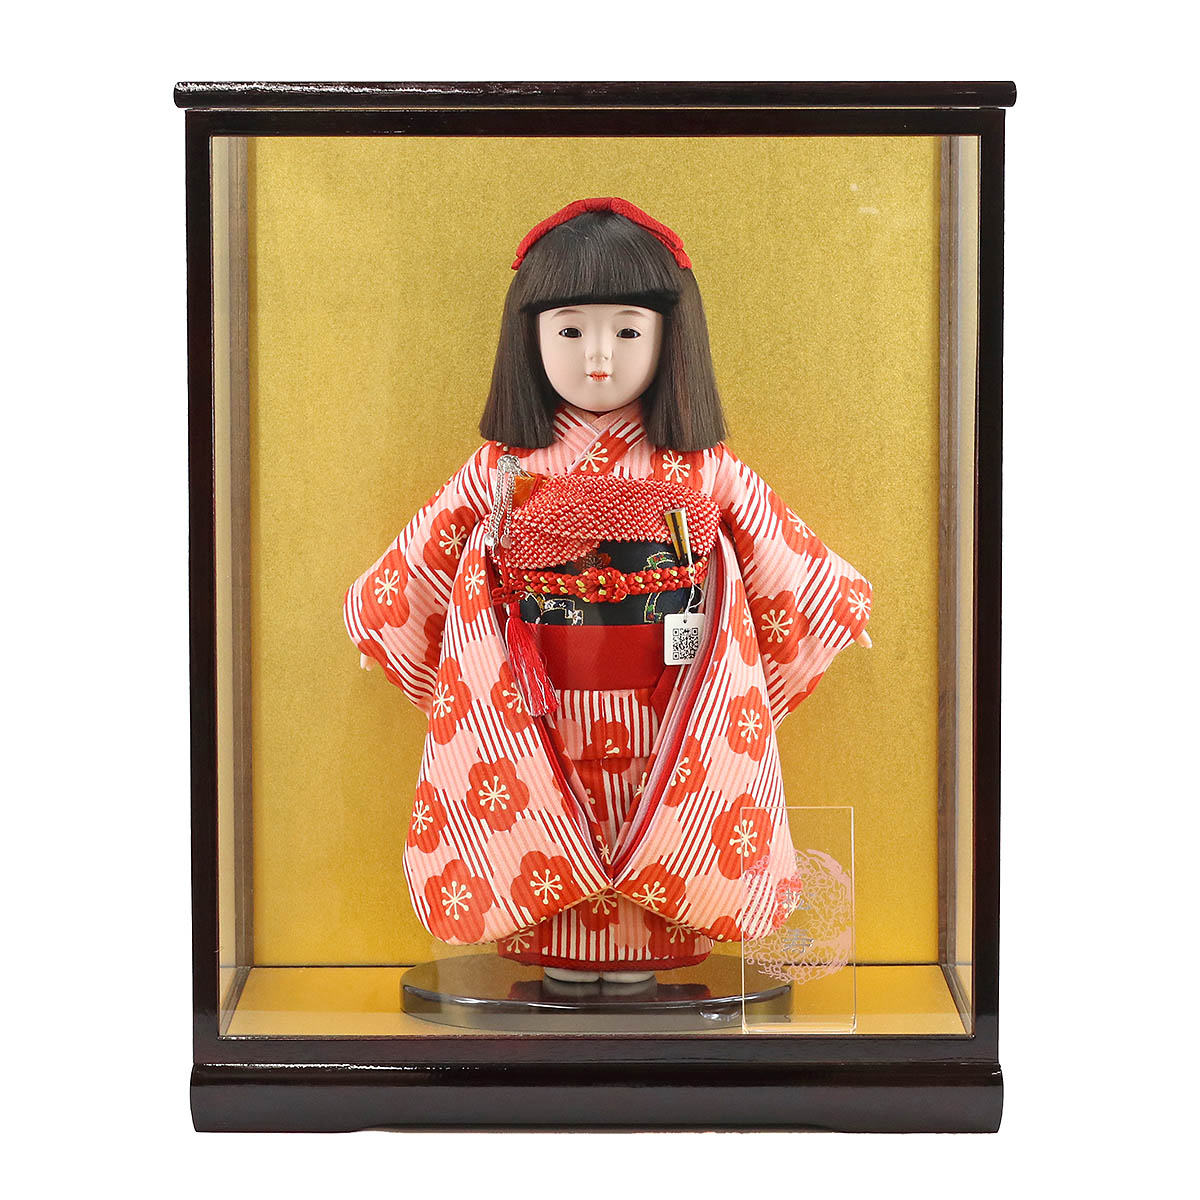 オープニング 市松人形 松寿 コンパクト 市松人形 松寿作 市松人形